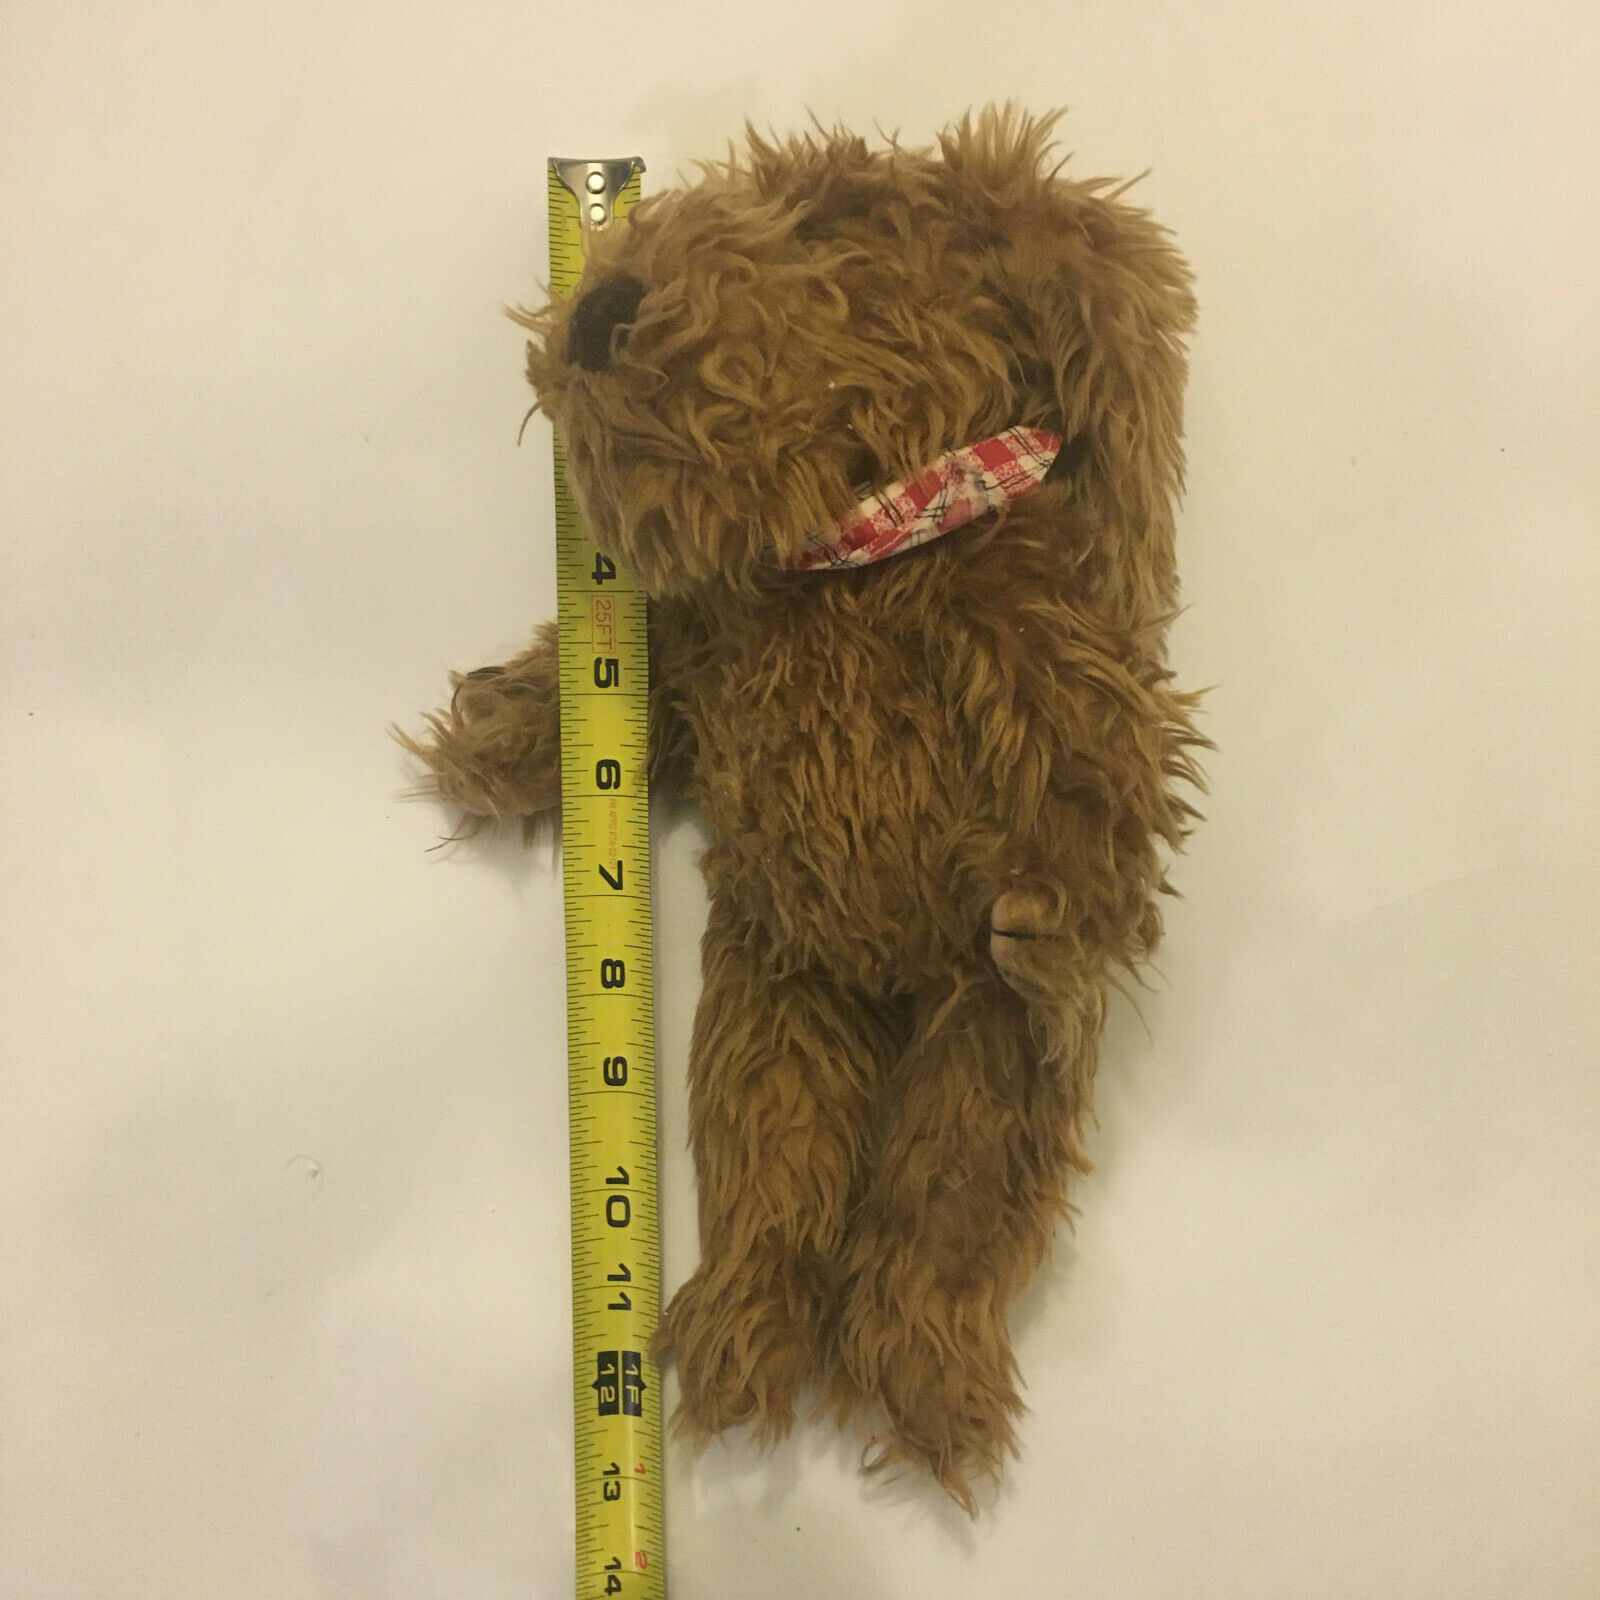 Ganz Bingo Dog Shaggy Plush Brown Tan Stuffed Toy 11 Inch Tall 1995 Vintage